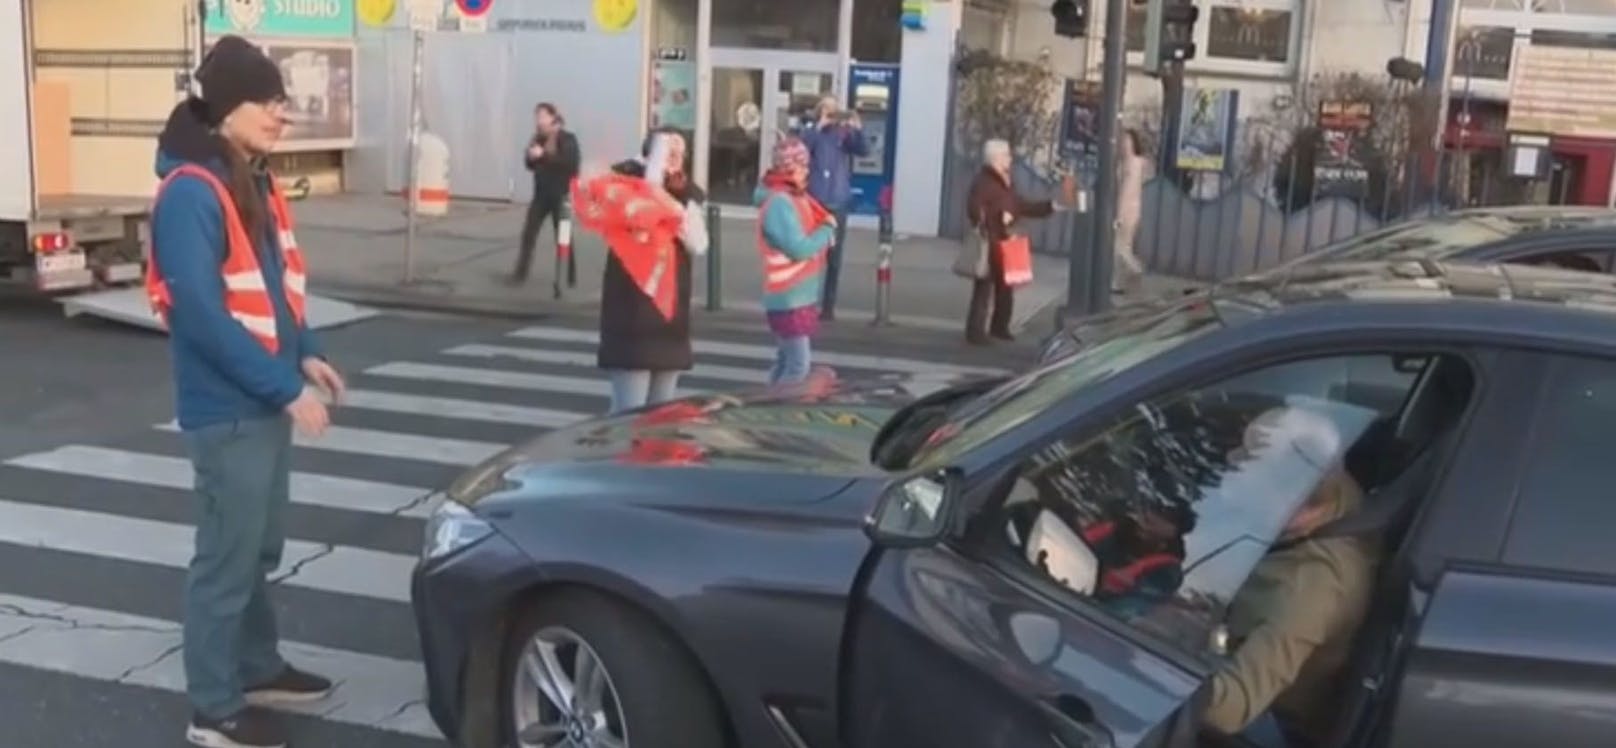 Der Wiener Autofahrer war über den Klima-Protest wenig erfreut: "Der Spaß hört irgendwo auf!"